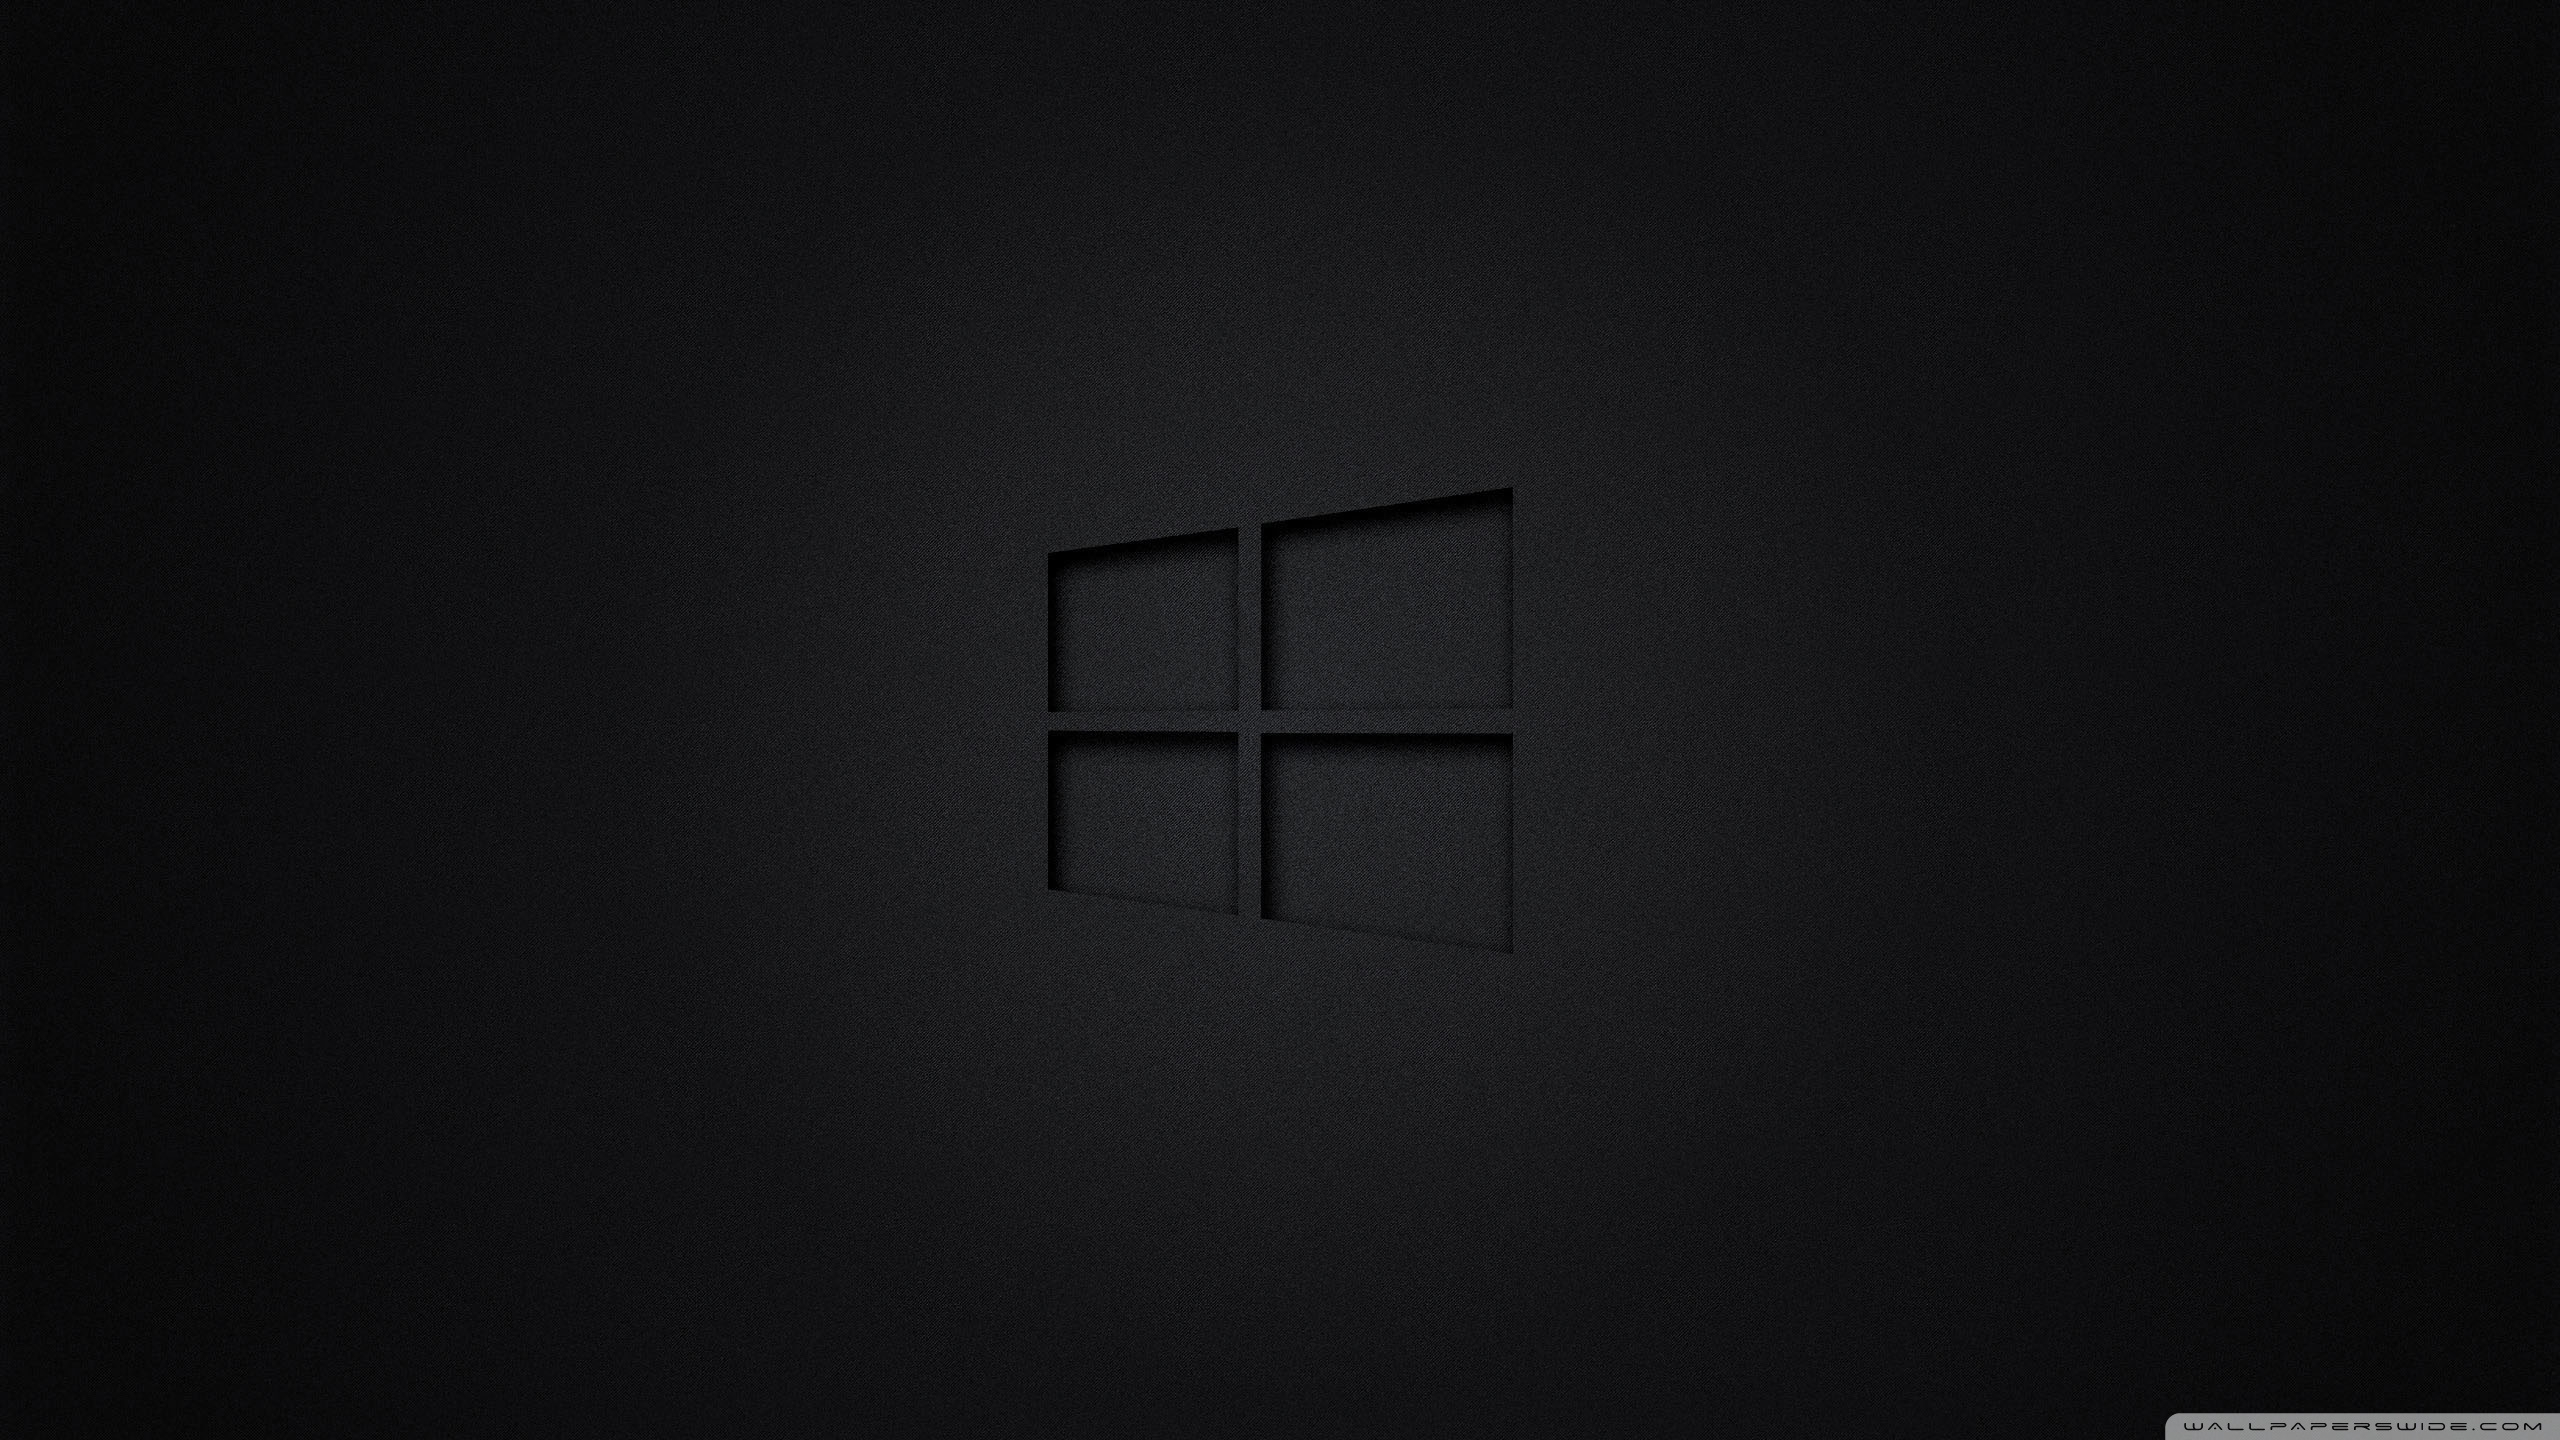 windows 10 black ❤ 4k hd desktop wallpaper for 4k ultra hd tv